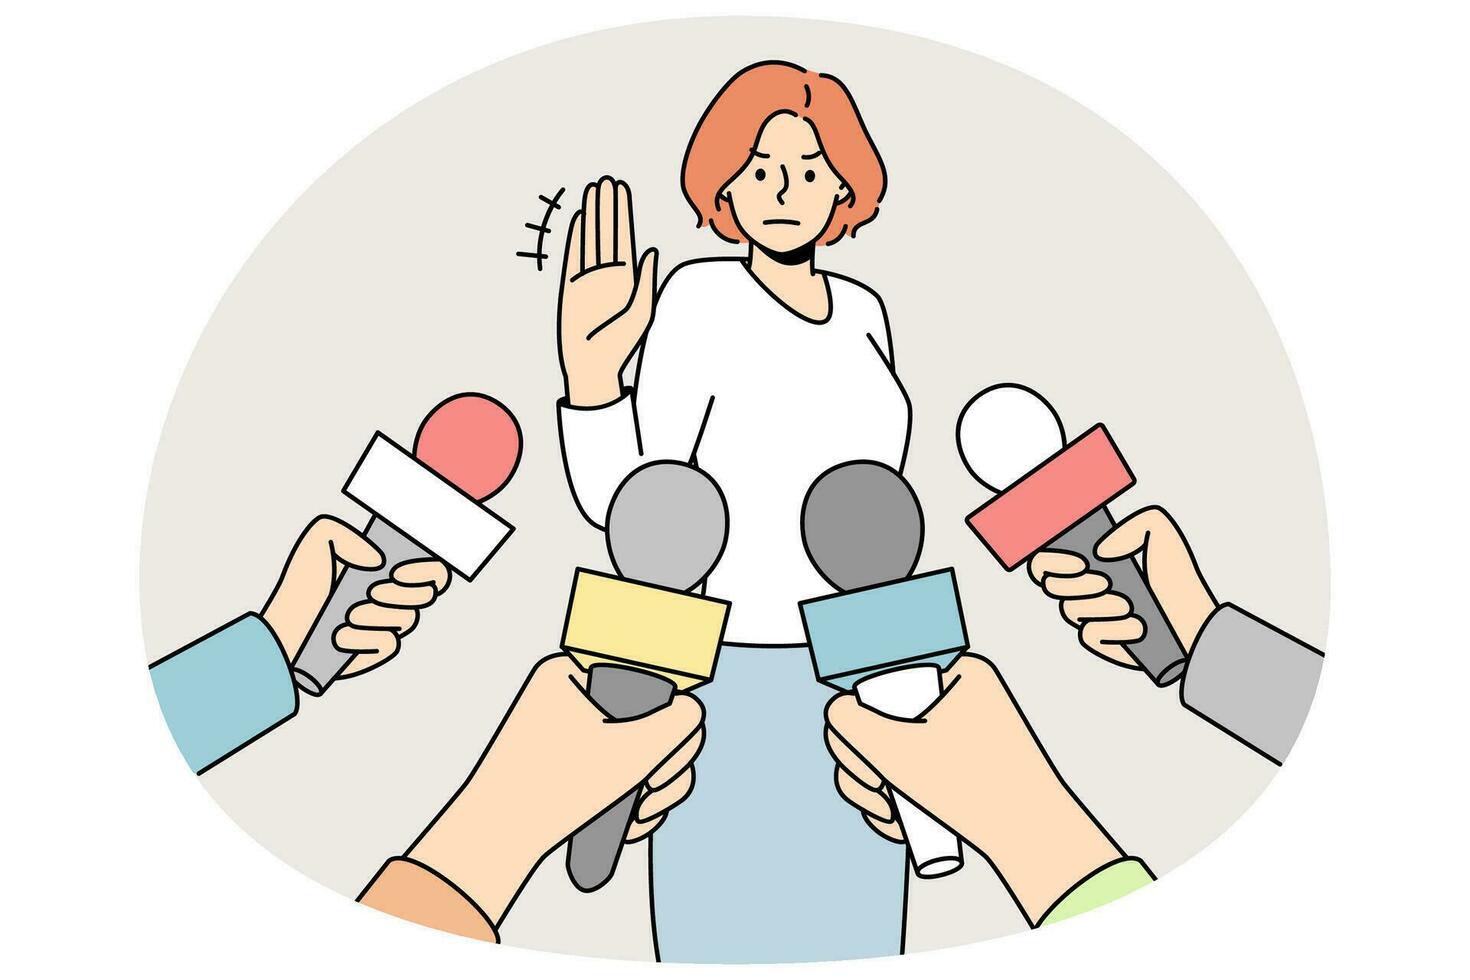 kvinna göra Nej kommentar gest på intervju med reportrar. fast besluten kvinna visa sluta hand tecken vägra prata med journalister. vektor illustration.